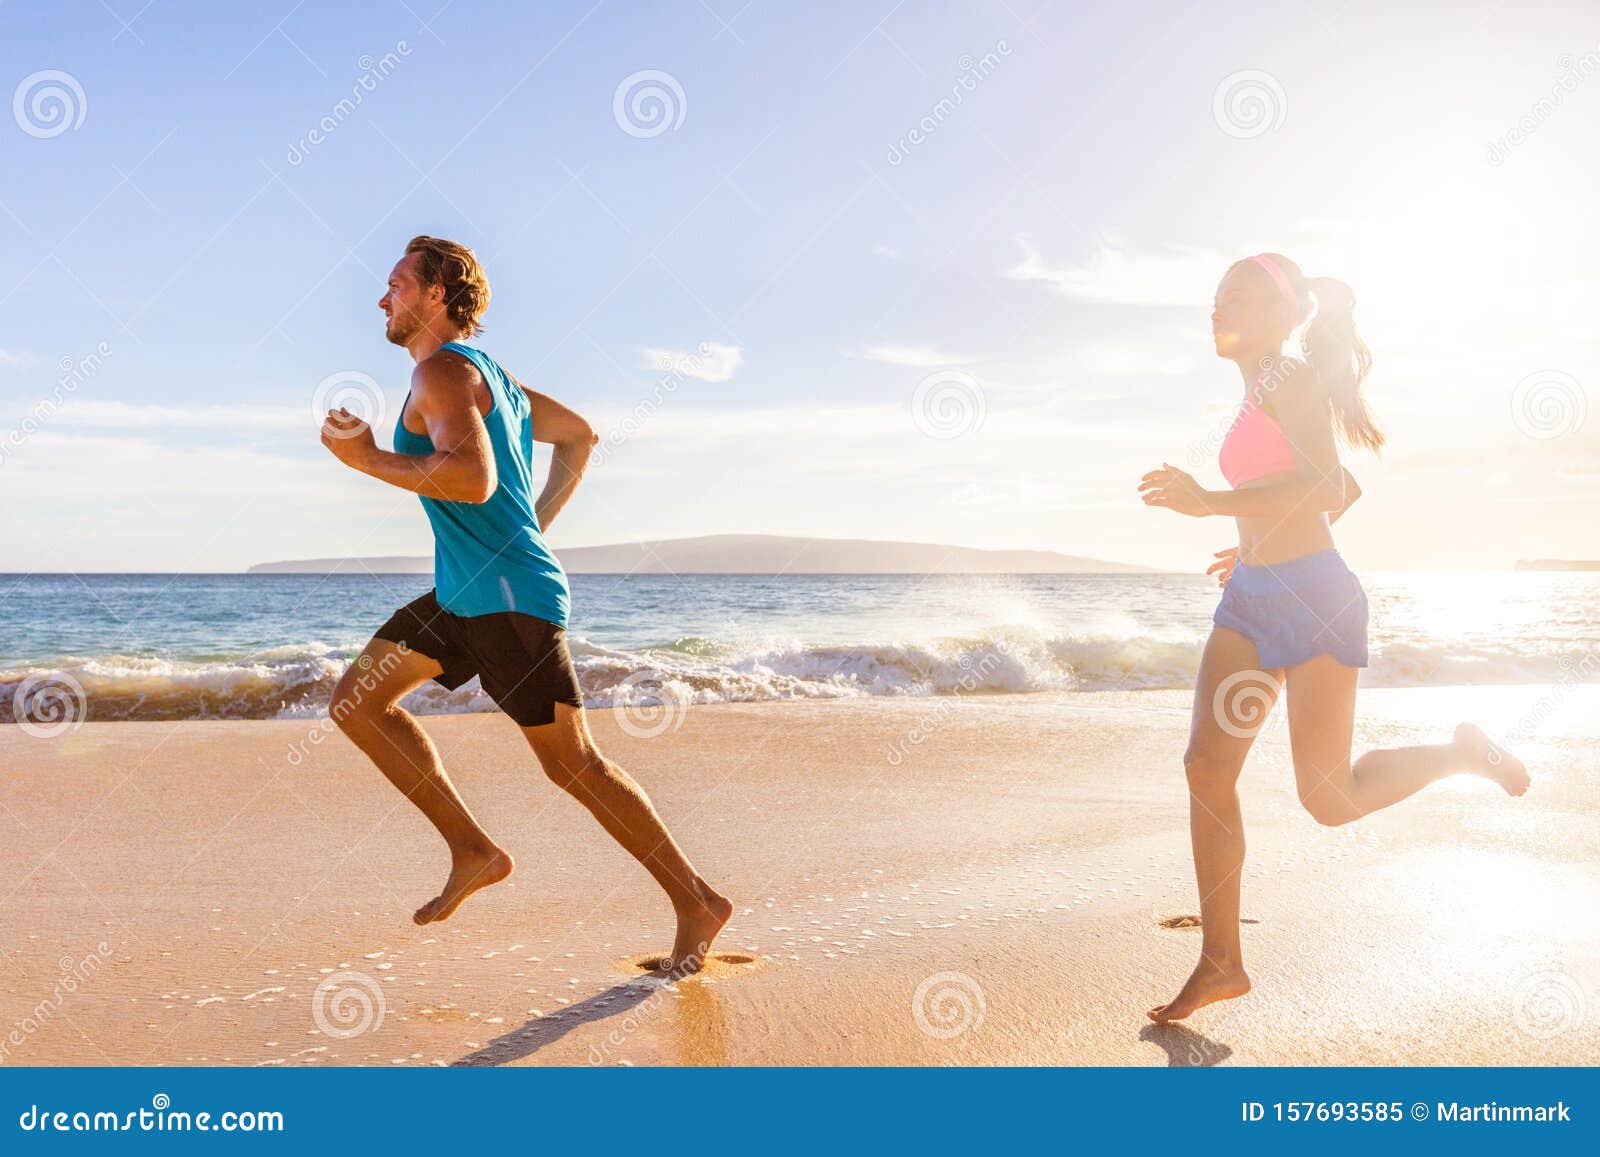 Jogging Couple Morning Beach Run 